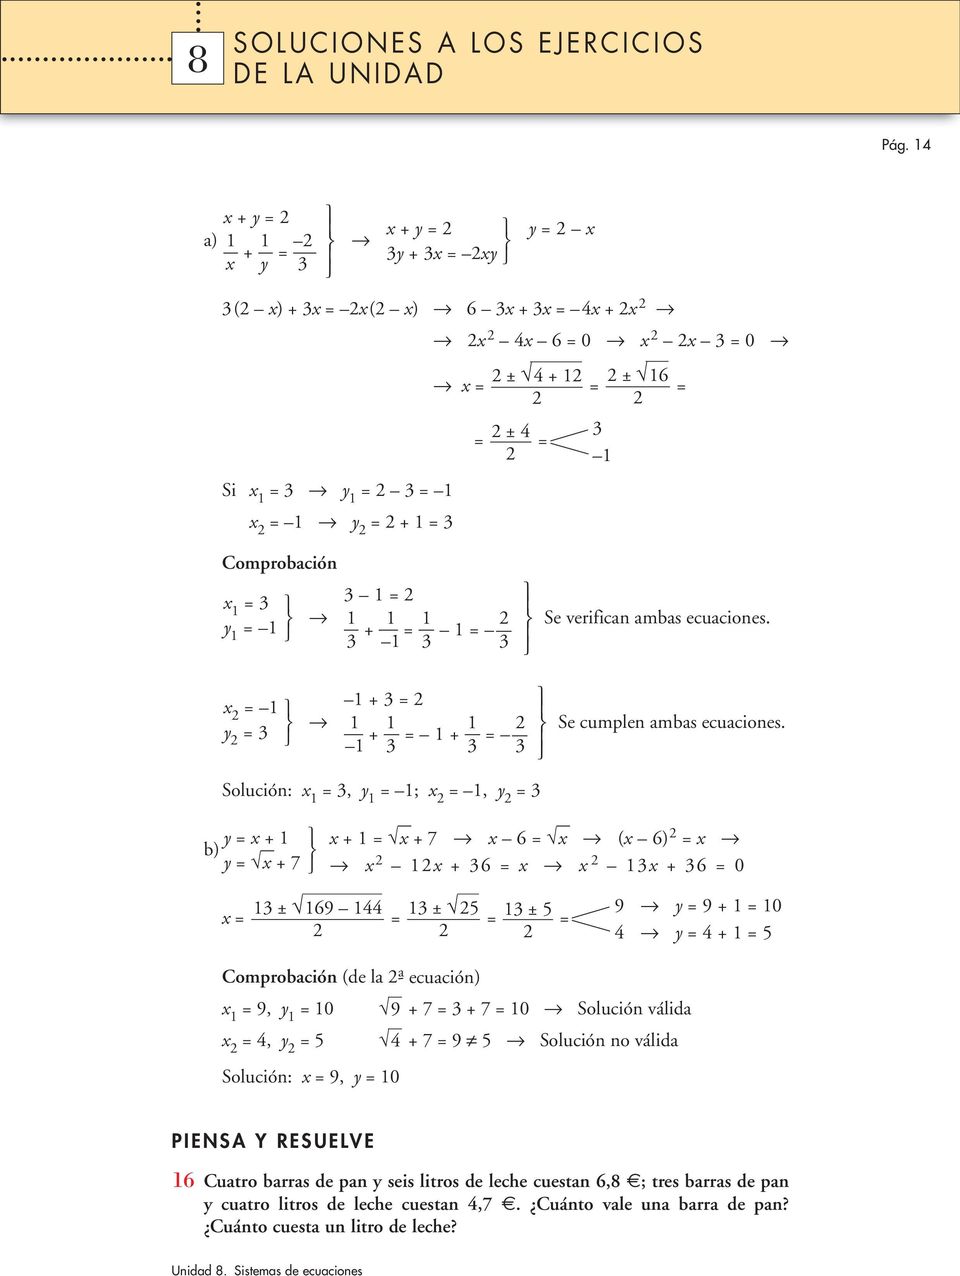 Solución: x, y ; x, y y x + y x + 7 x + x +7 x 6 x (x 6) x x x + 6 x x x + 6 0 ± 69 ± 5 x ± 5 9 y 9 + 0 y + 5 Comprobación (de la - a ecuación) x 9, y 0 9 +